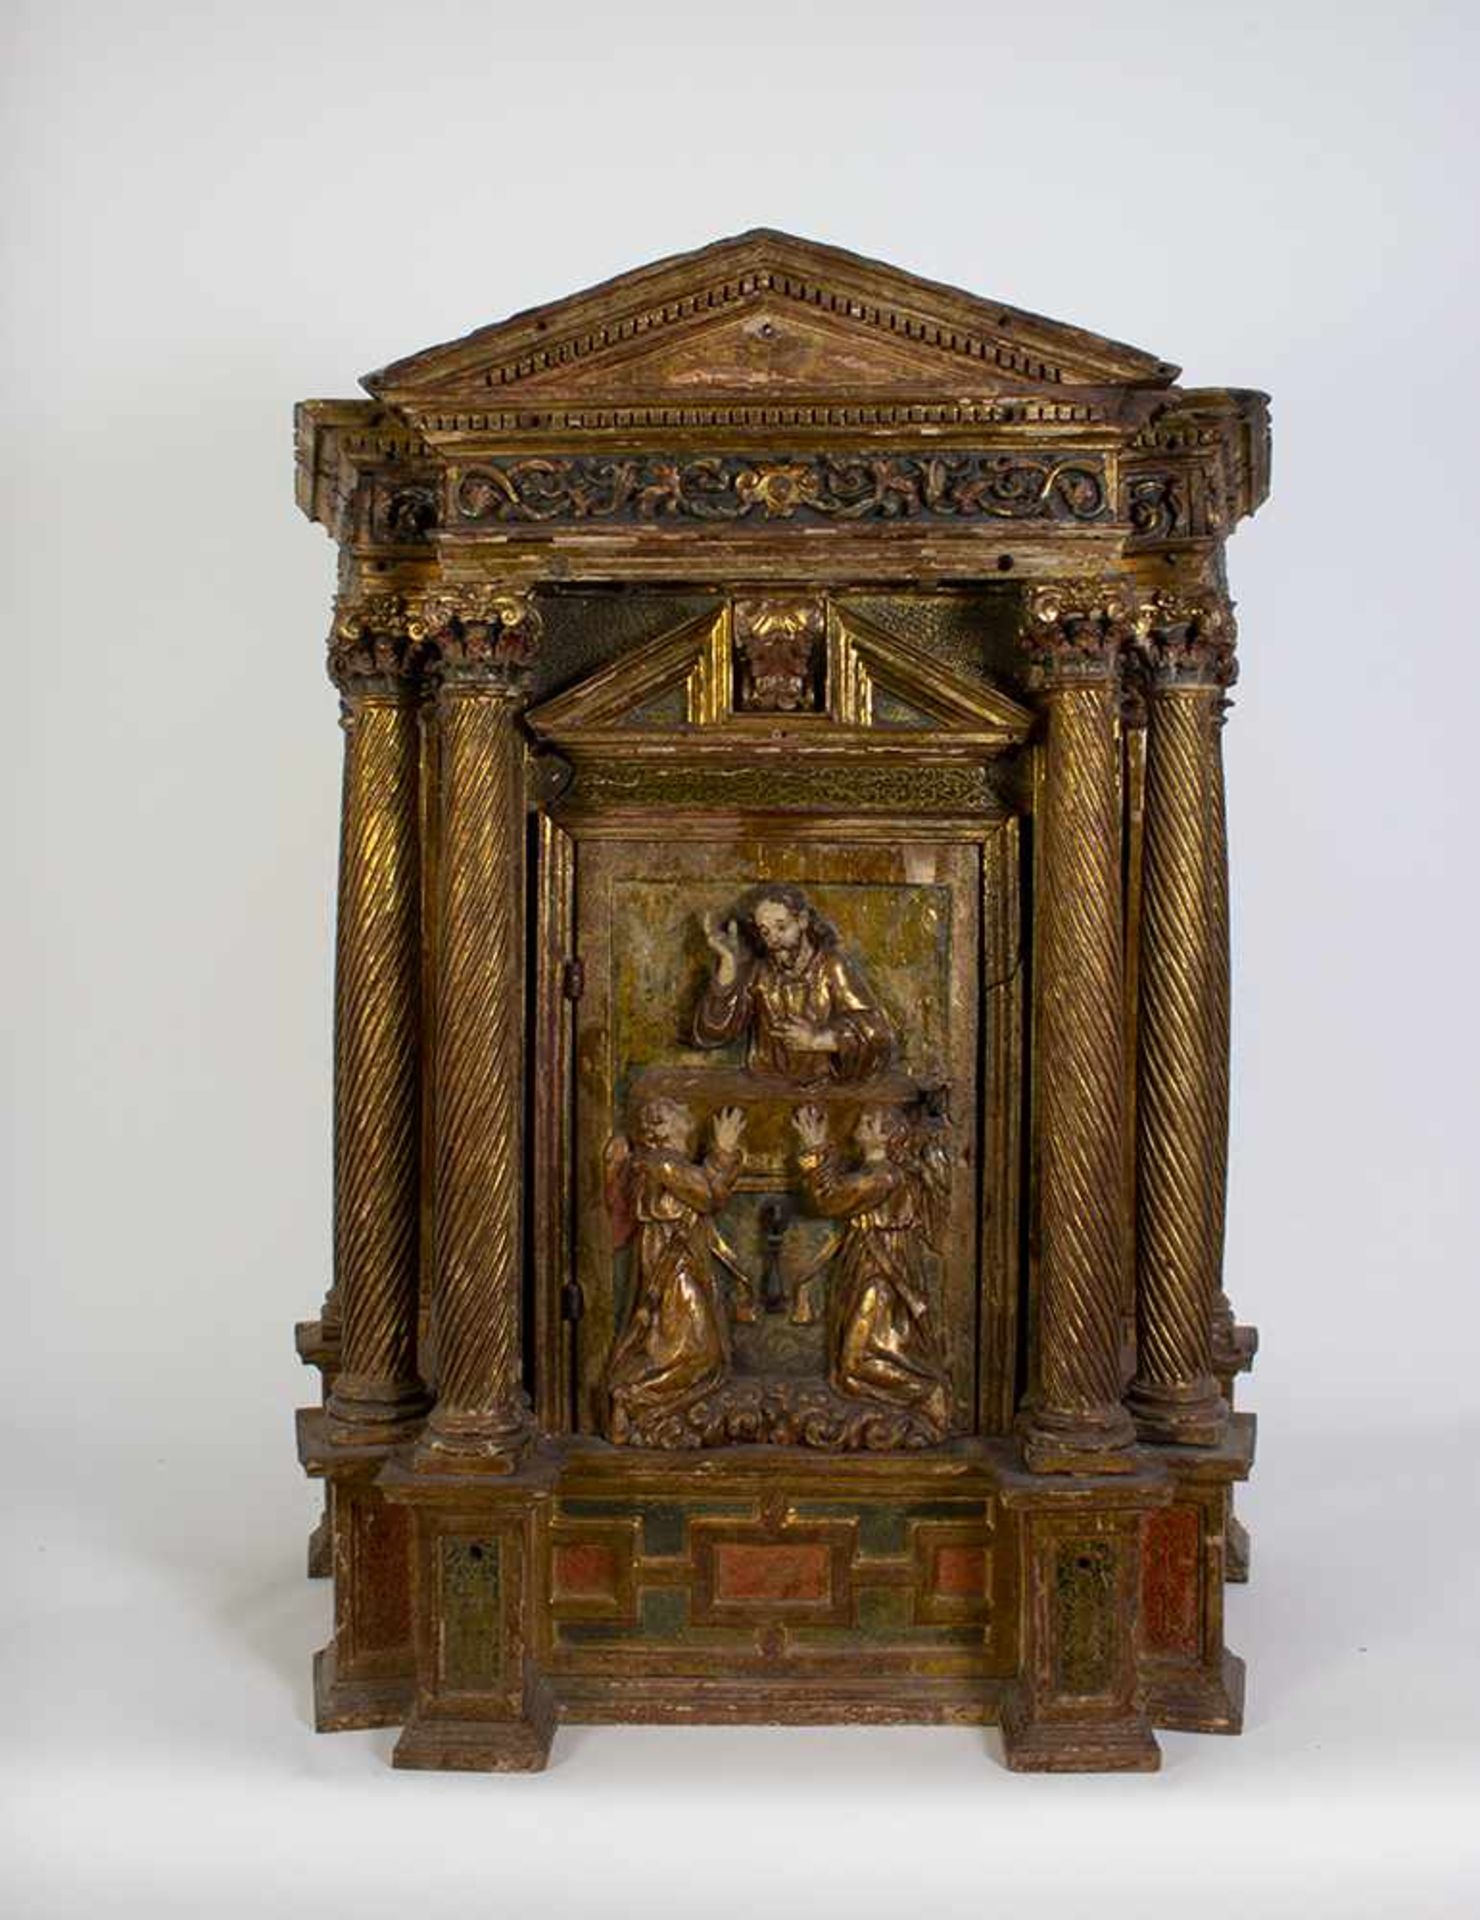 Sagrario a modo de templete en madera tallada, policromada y dorada, siglo XVI.Sagrario a modo